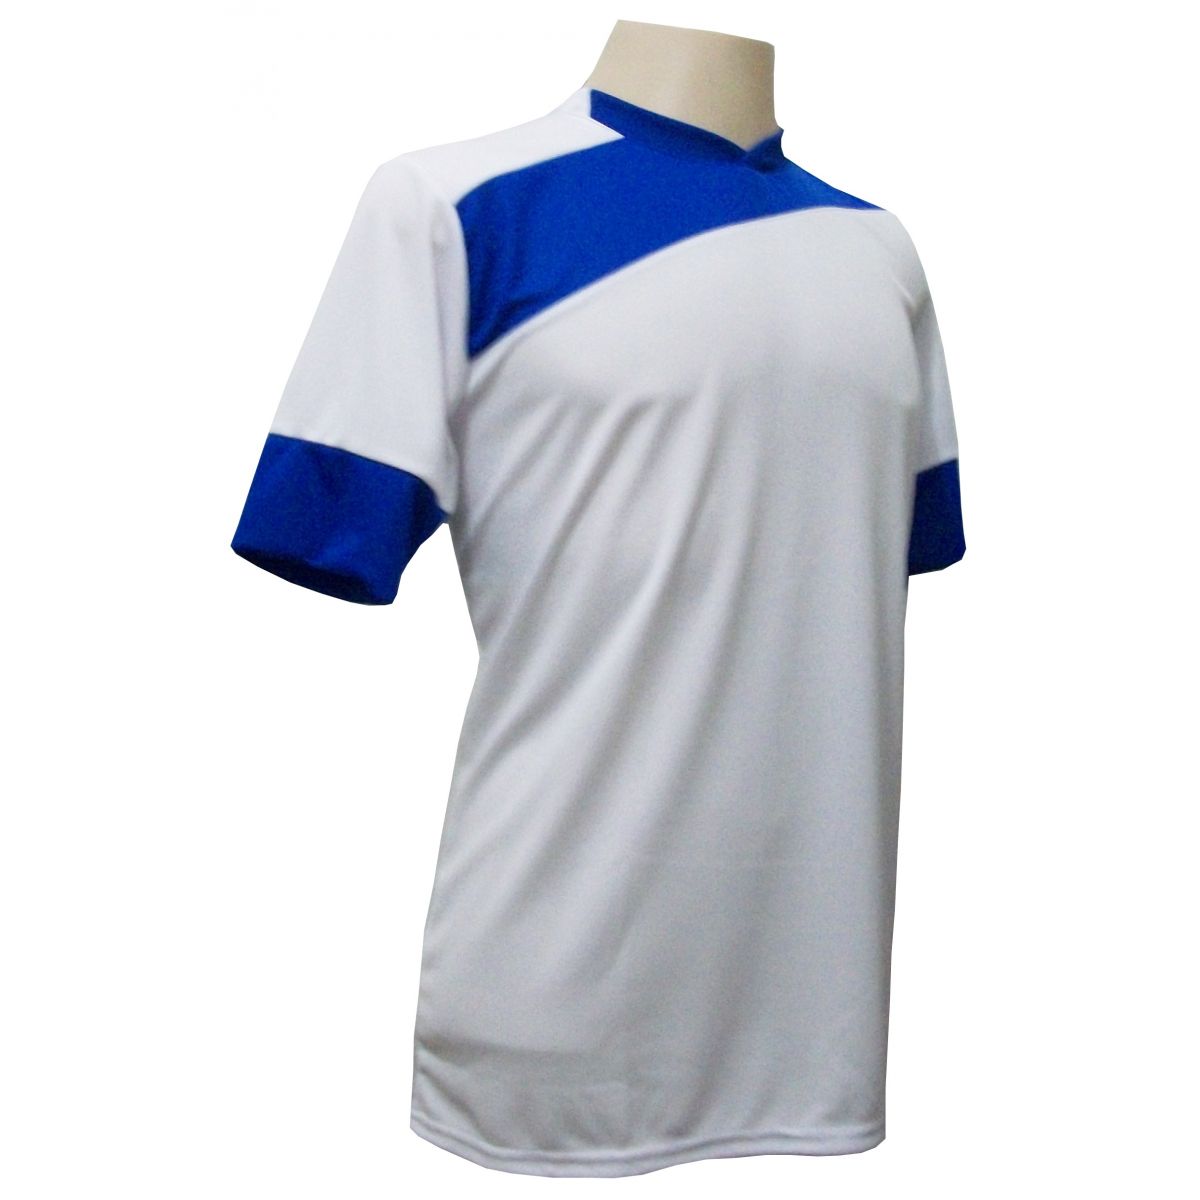 Jogo de Camisa com 14 unidades modelo Sporting Branco/Royal + 1 Goleiro + Brindes